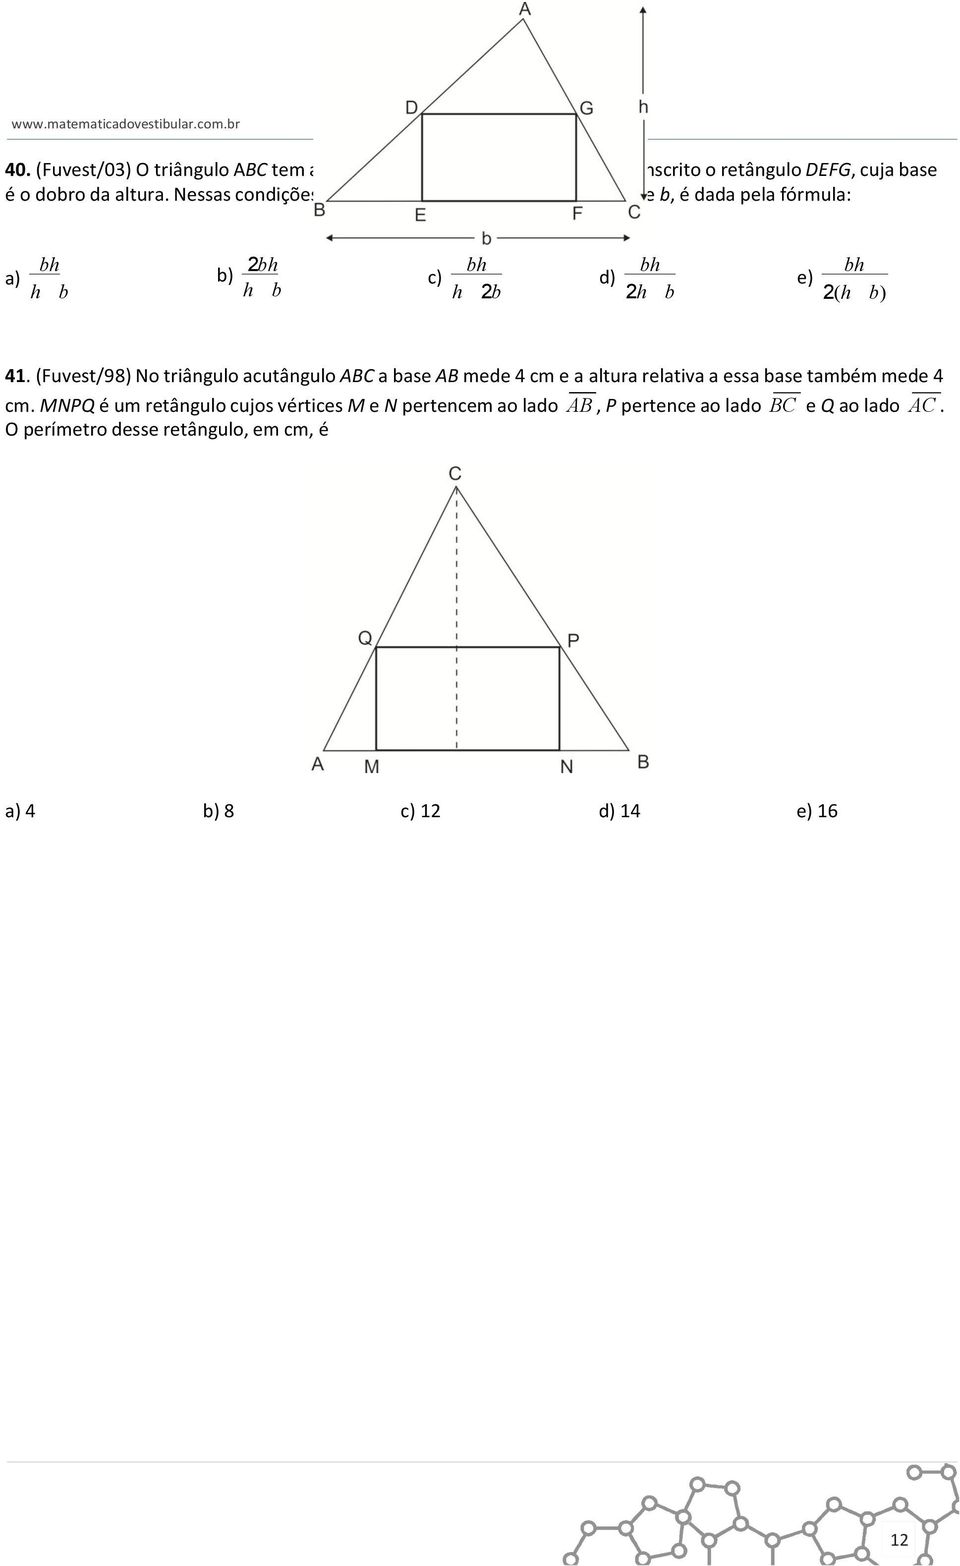 41. (Fuvest/98) No triângulo acutângulo ABC a base AB mede 4 cm e a altura relativa a essa base também mede 4 cm.